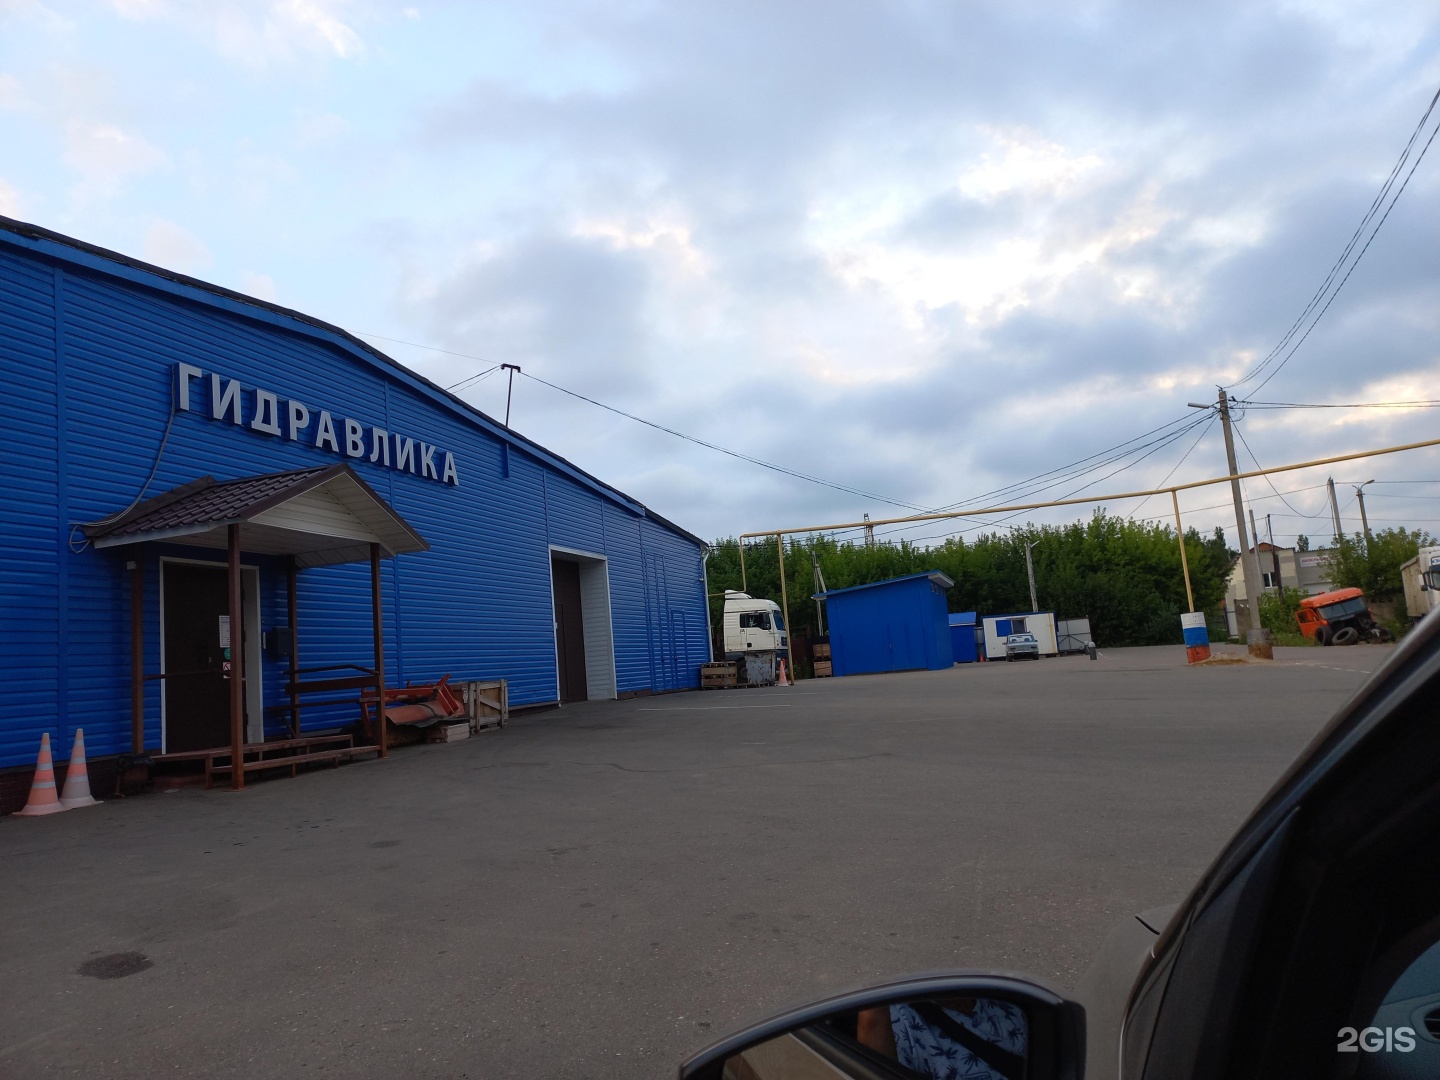 Параллельная 11 б. Магазин гидравлика в Петрозаводске Сулажгора.